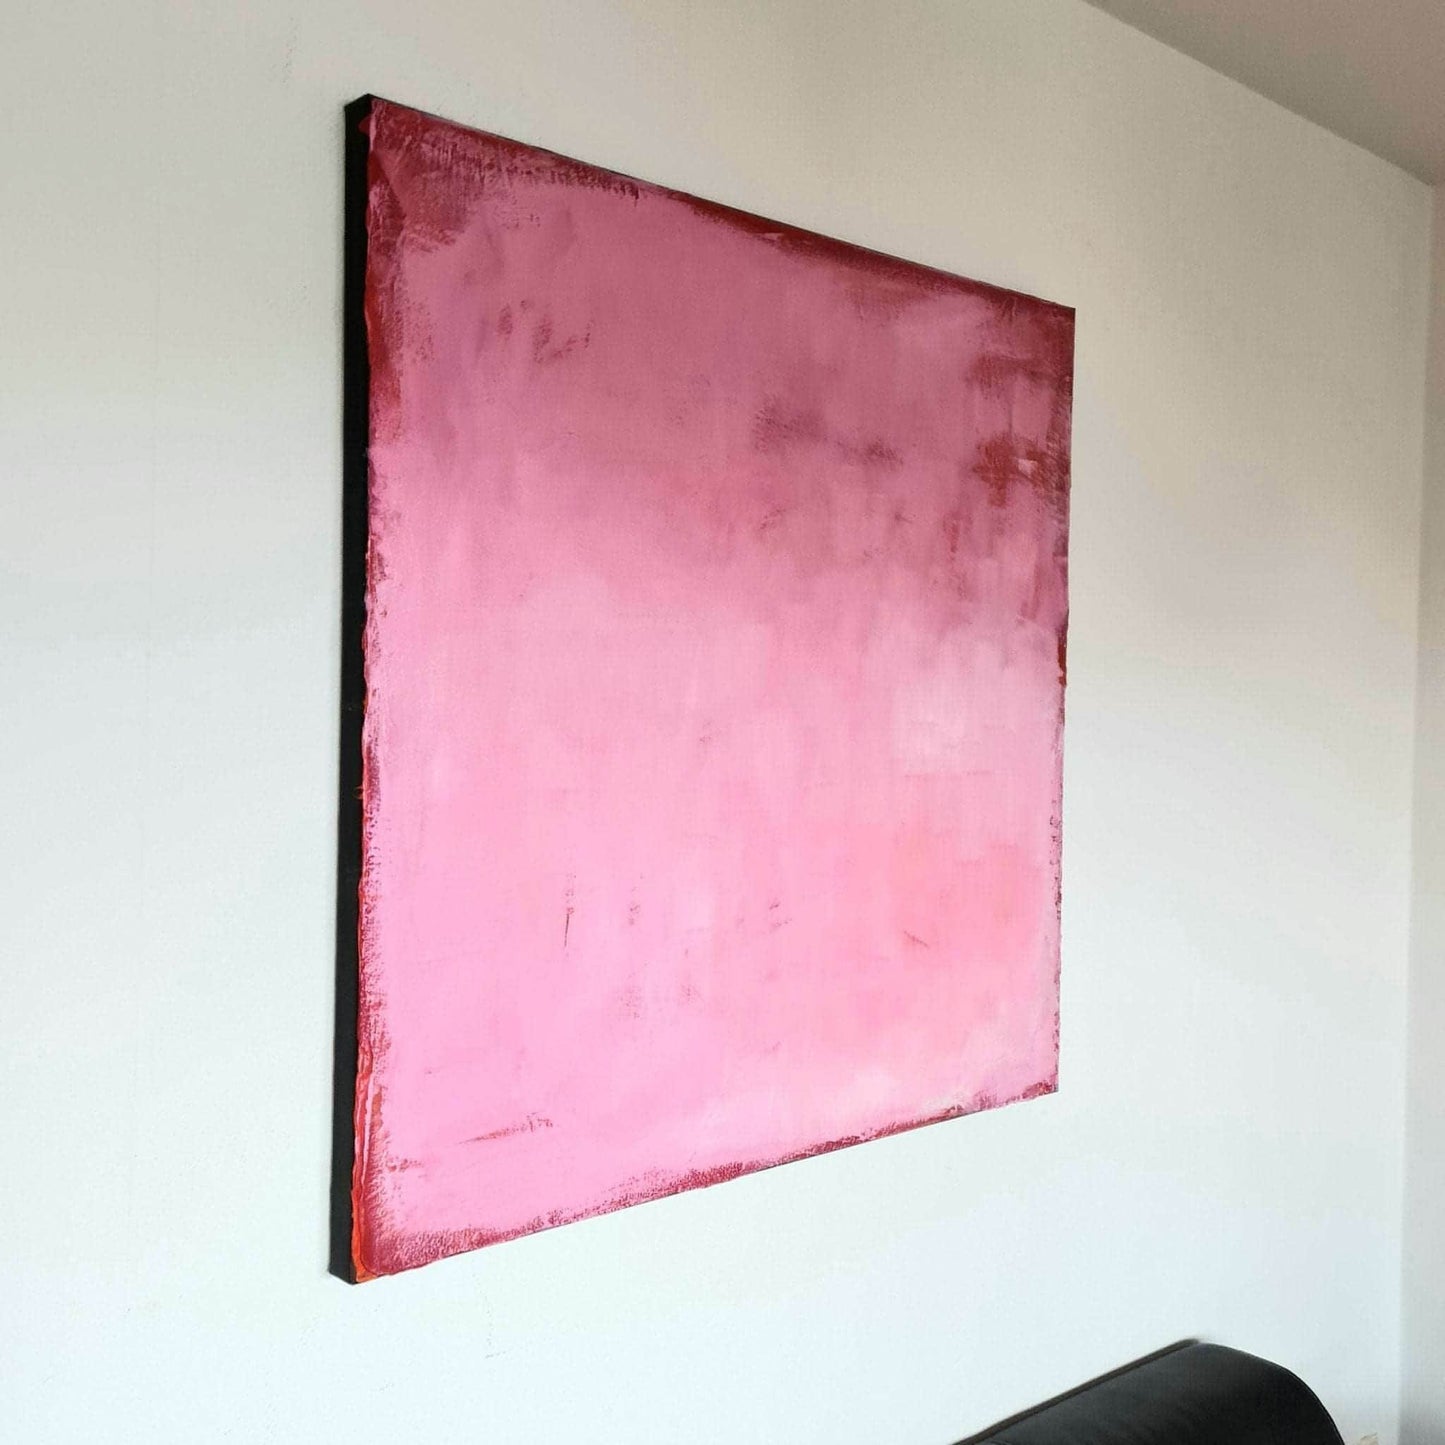 Abstrakte Kunst in Rosa, Lila und Pink - Inspirierendes Gemälde für kreative Gedanken Abstrakte Bilder & moderne Auftragsmalerei, abstrakte große bilder online kaufen, Auftrags Malere